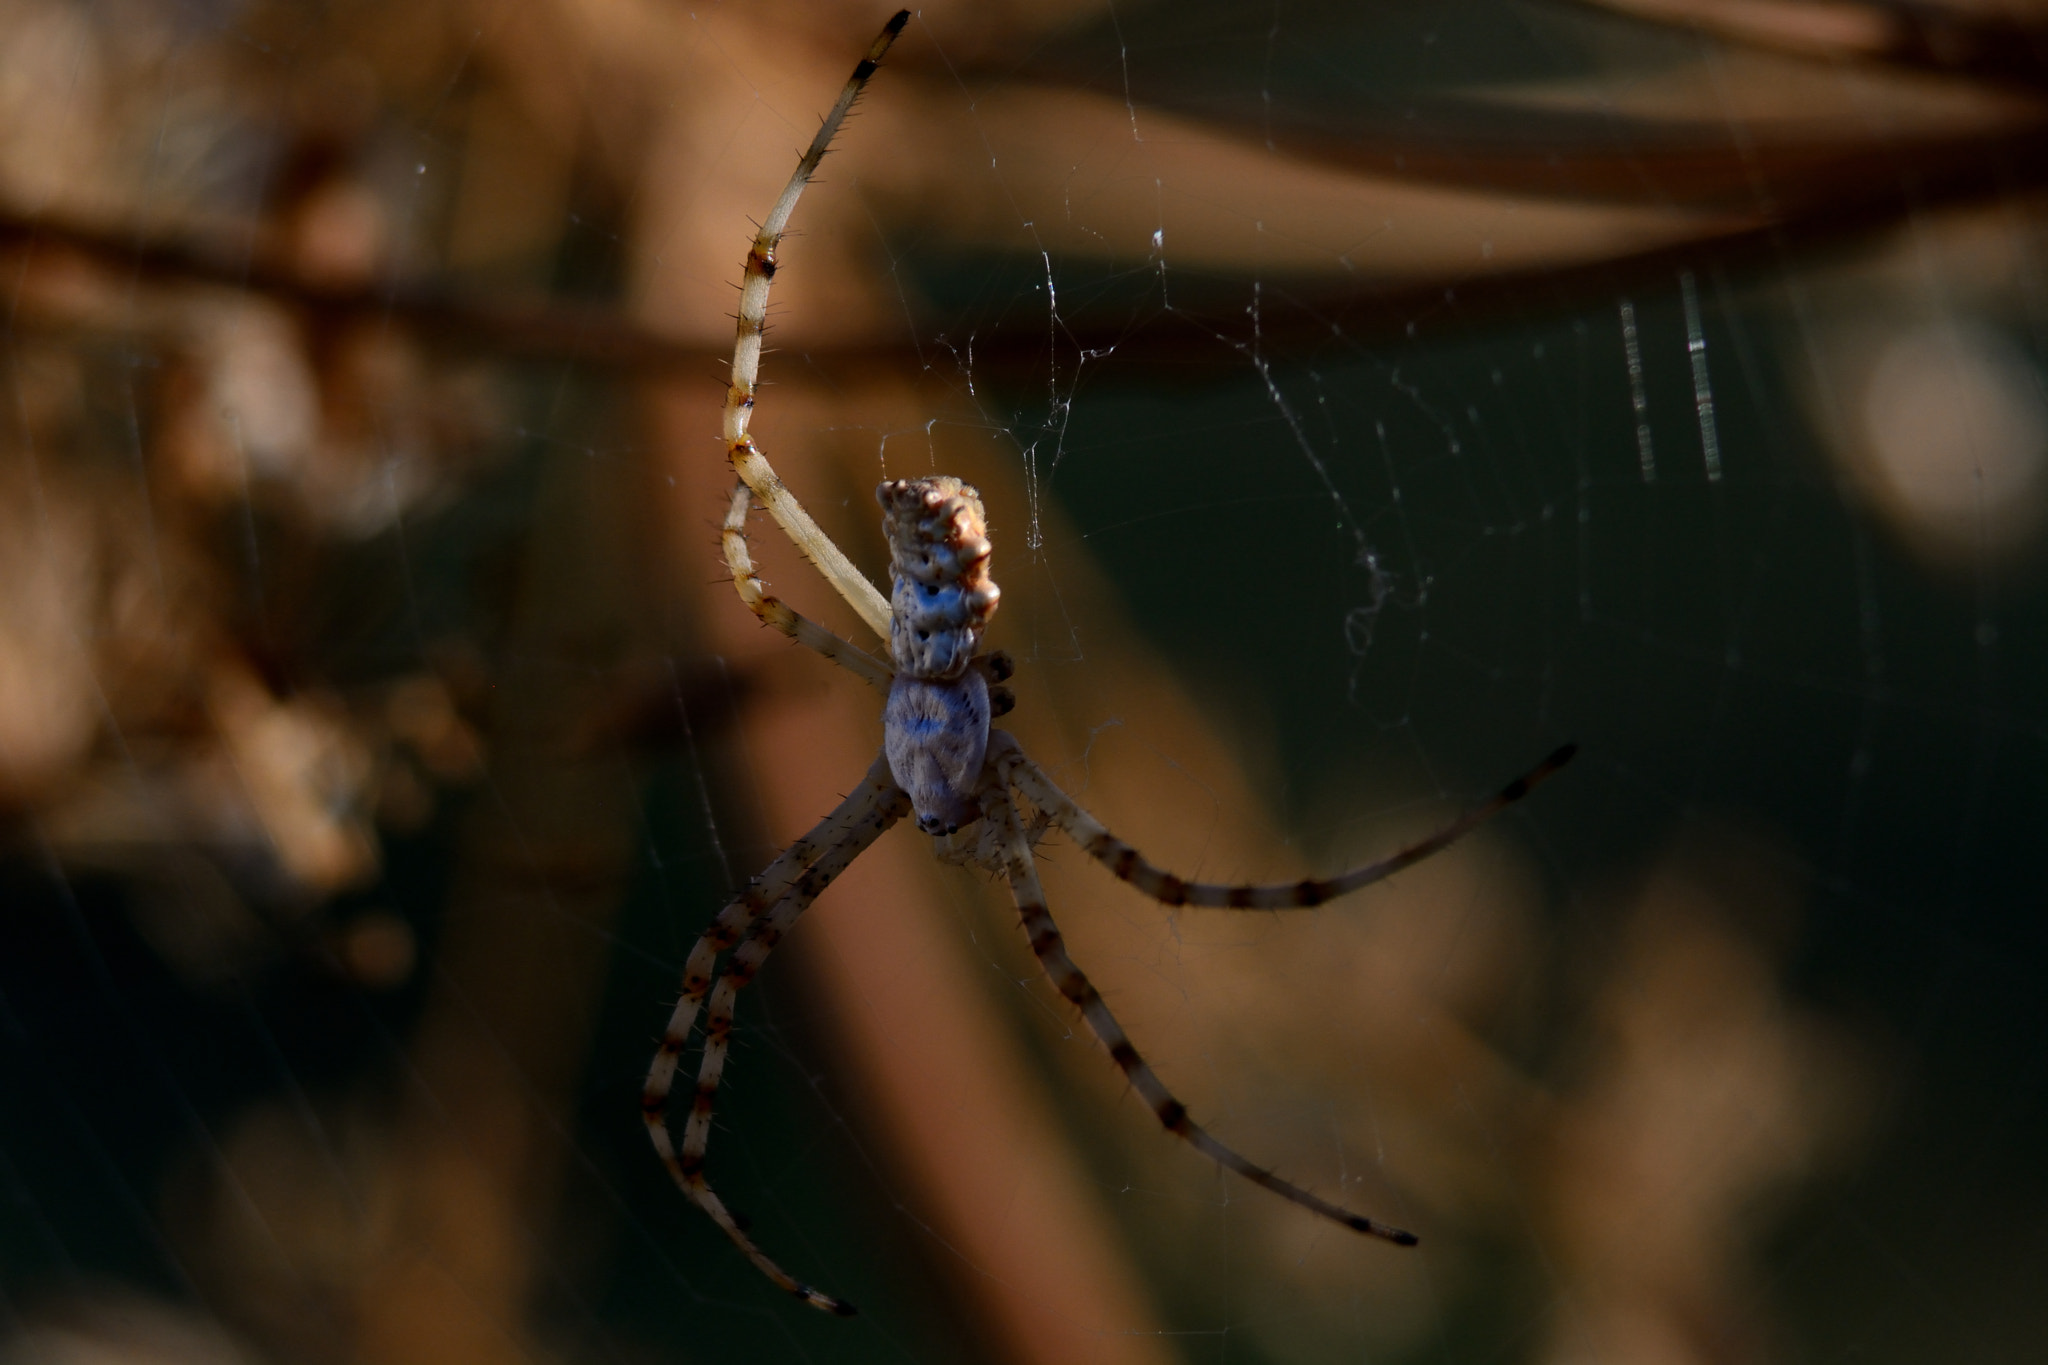 AF Zoom-Nikkor 75-240mm f/4.5-5.6D sample photo. Little six-legs spider photography